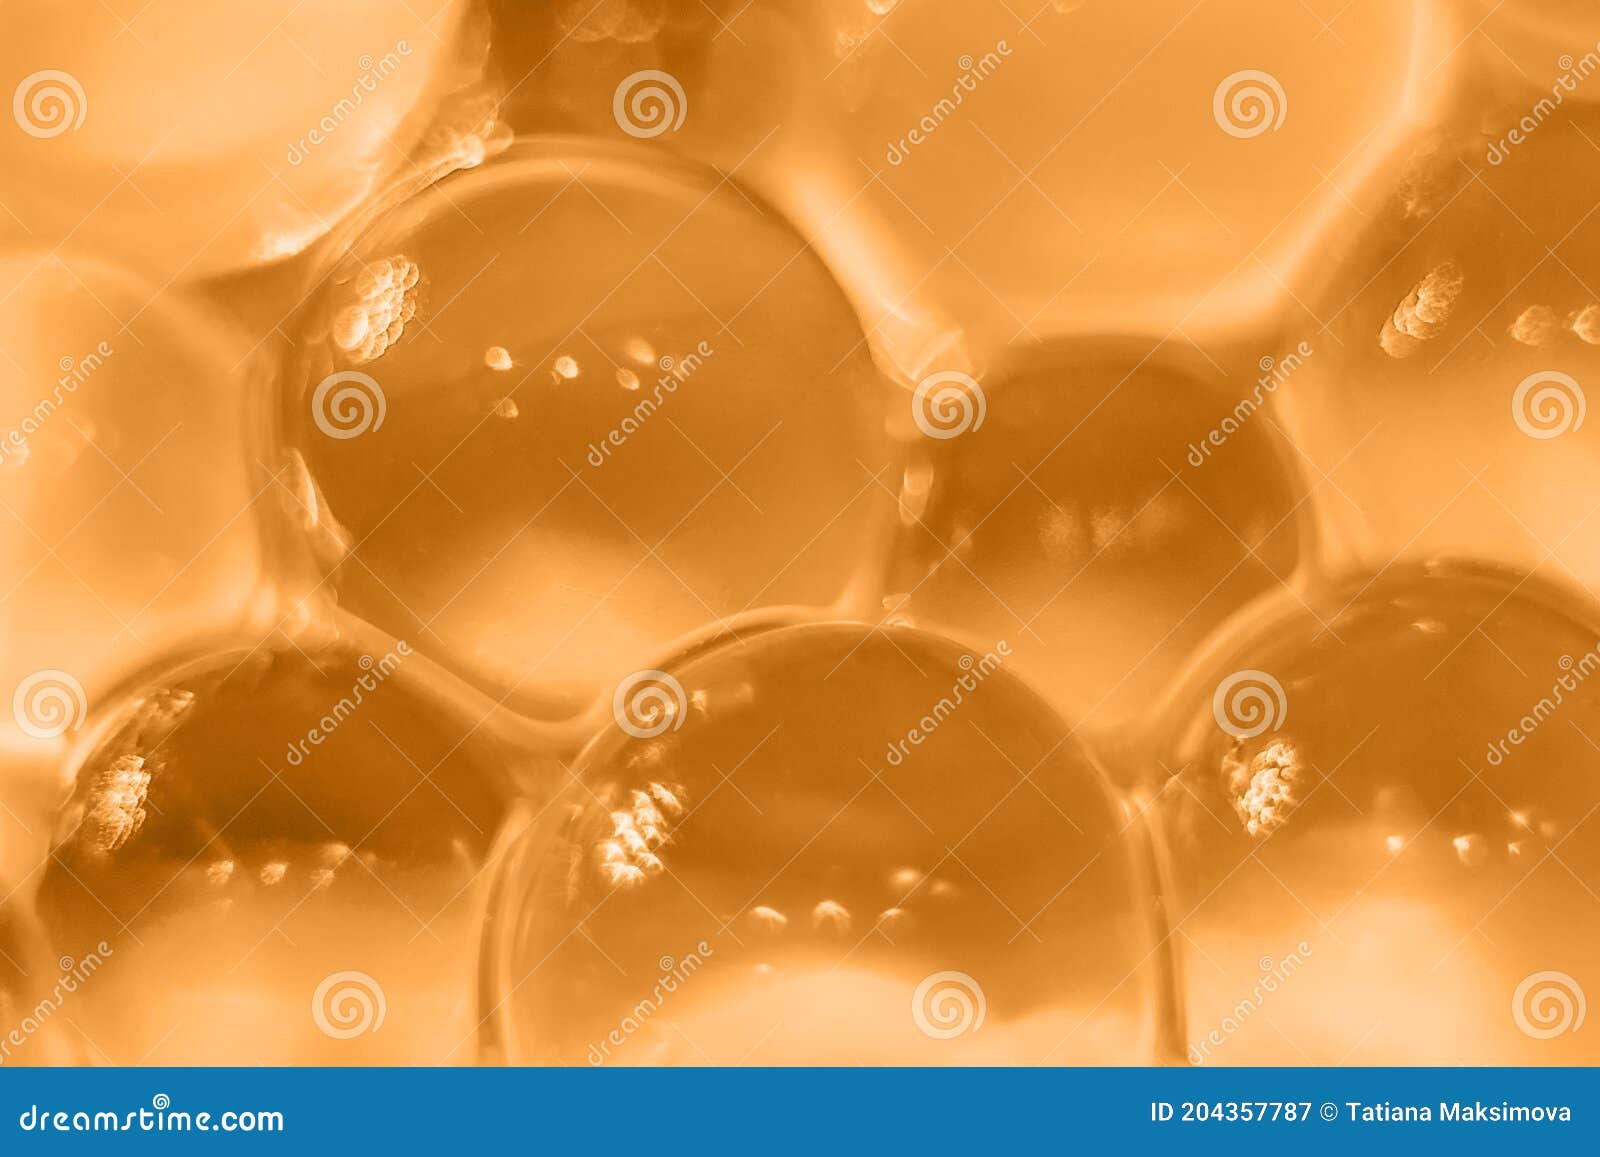 https://thumbs.dreamstime.com/z/les-billes-cristallines-d-hydrogel-de-ferment-texture-orange-abstraite-pour-l-arri%C3%A8re-plan-perles-fermez-vous-dans-et-hors-focale-204357787.jpg